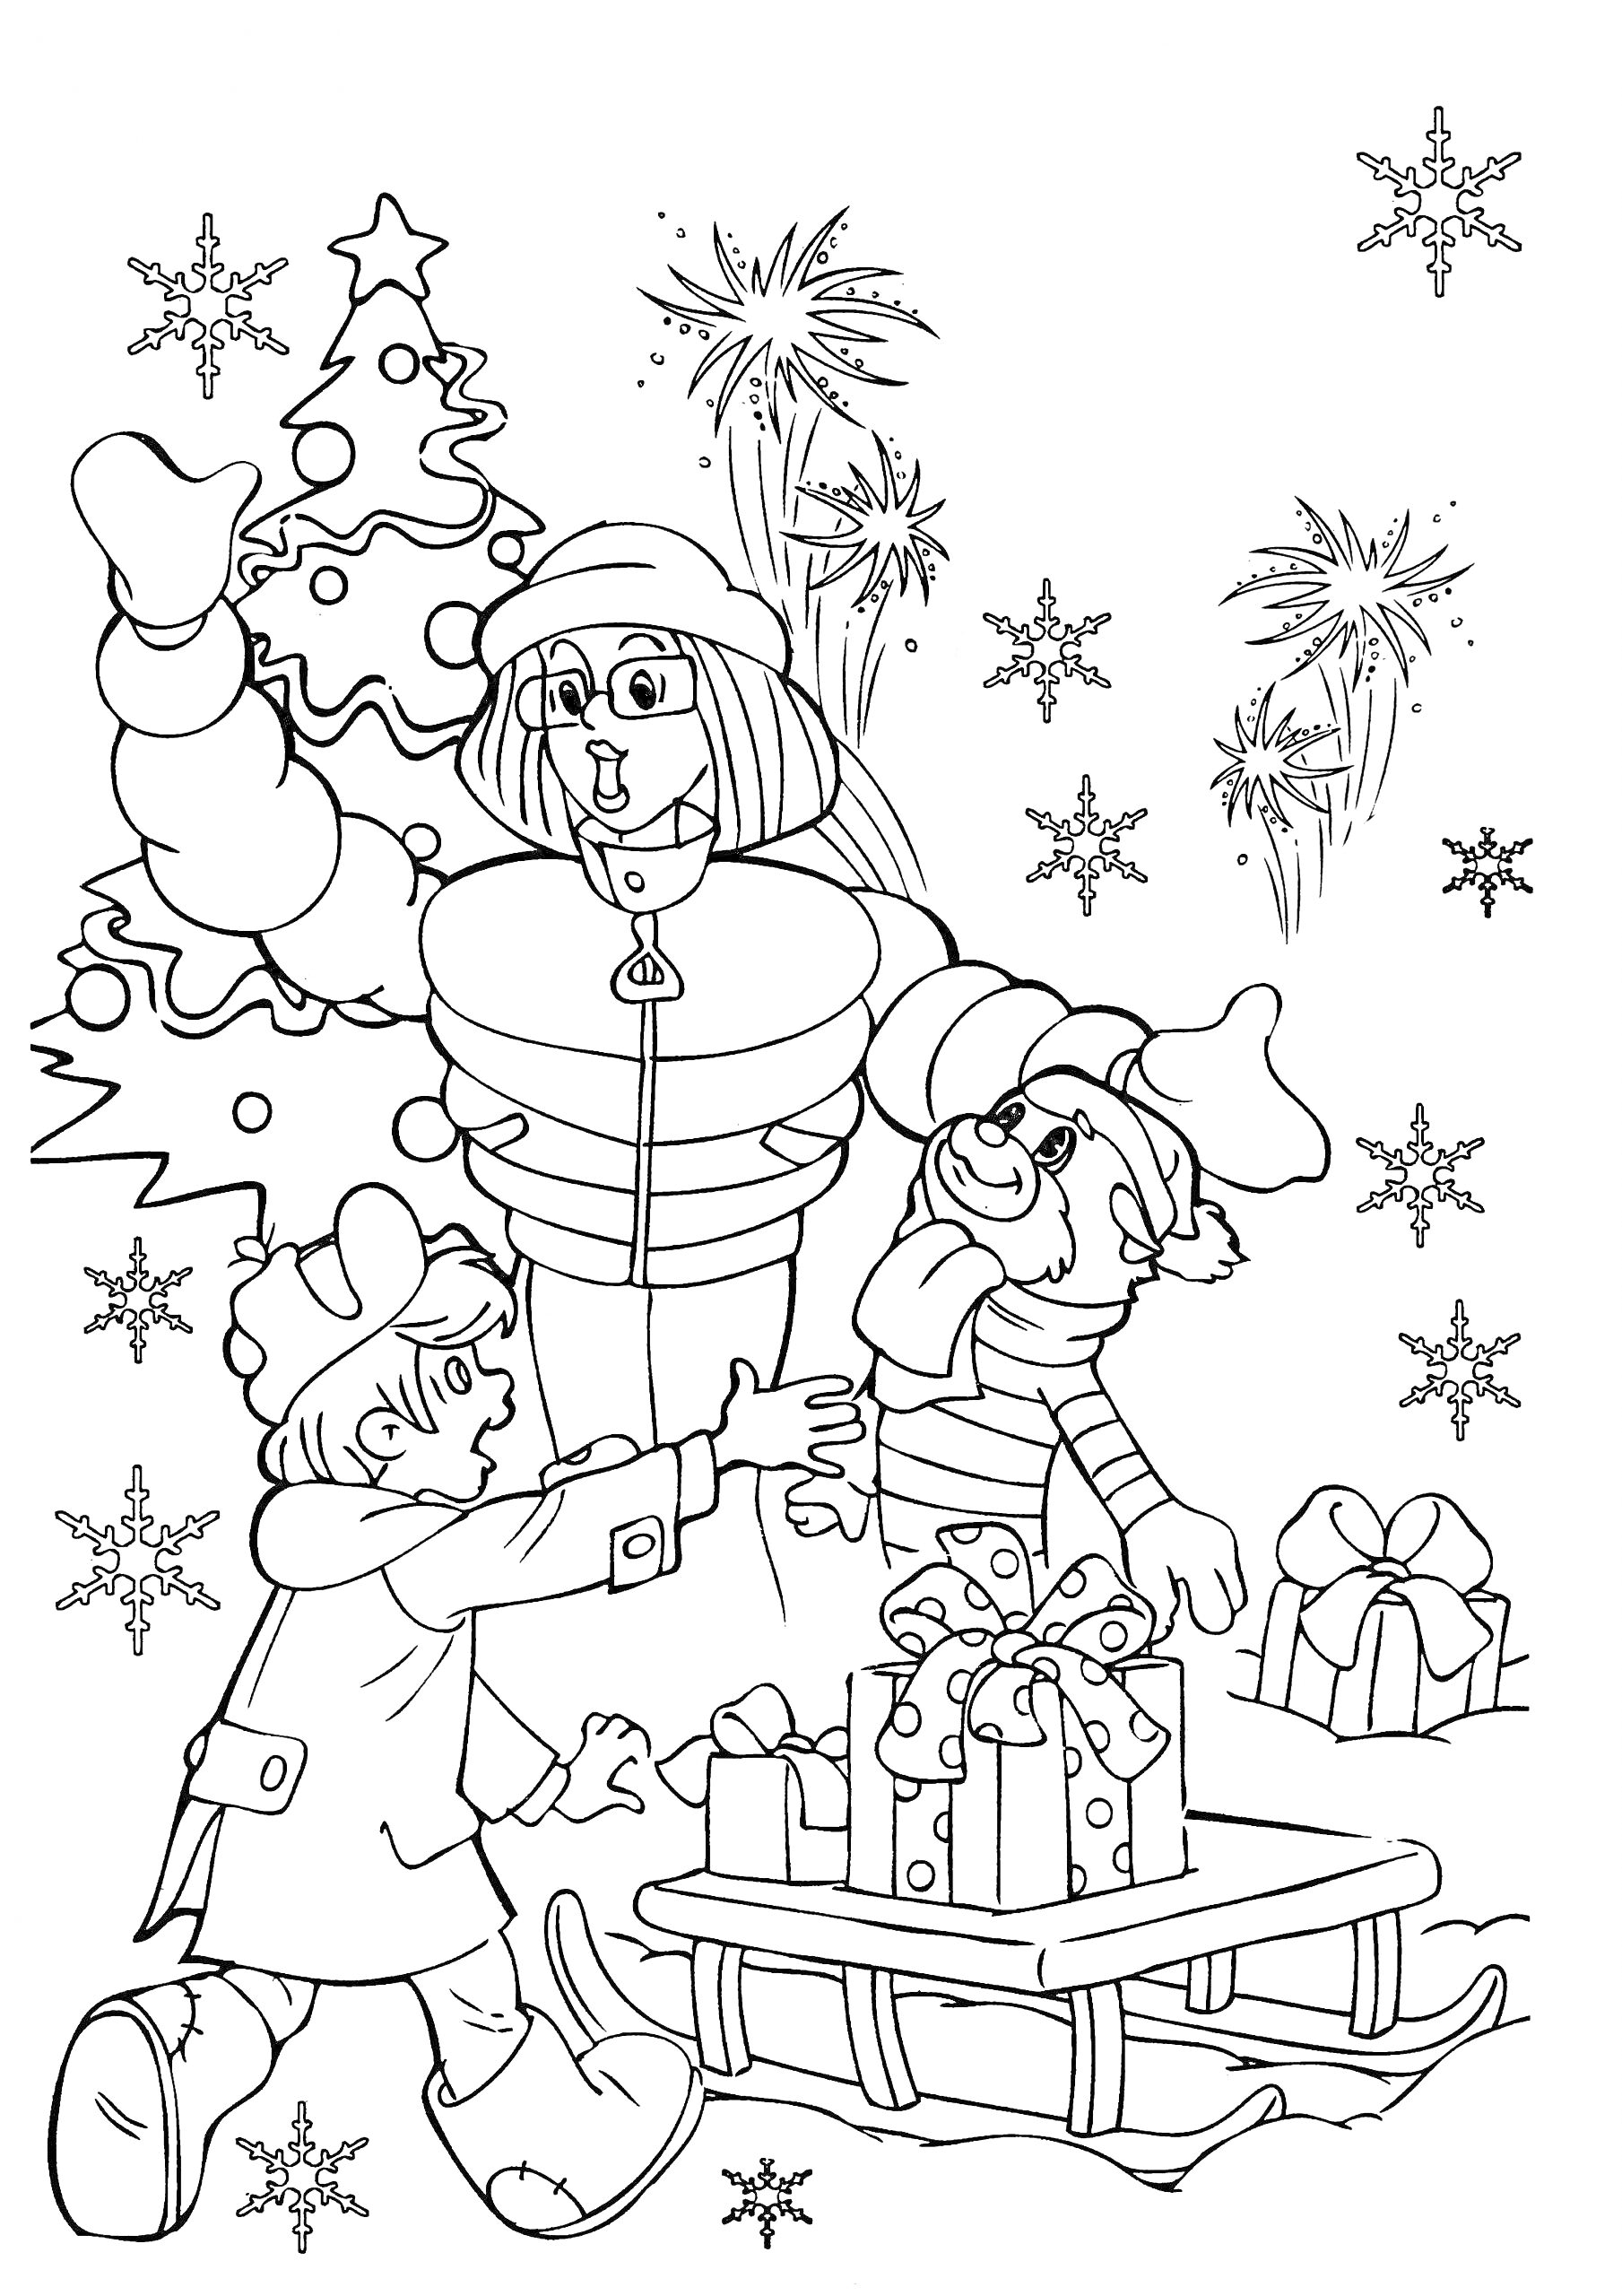 Раскраска Дед Мороз, мальчик и собака возле рождественской ёлки с подарками на санках, снежинками и фейерверками на заднем плане